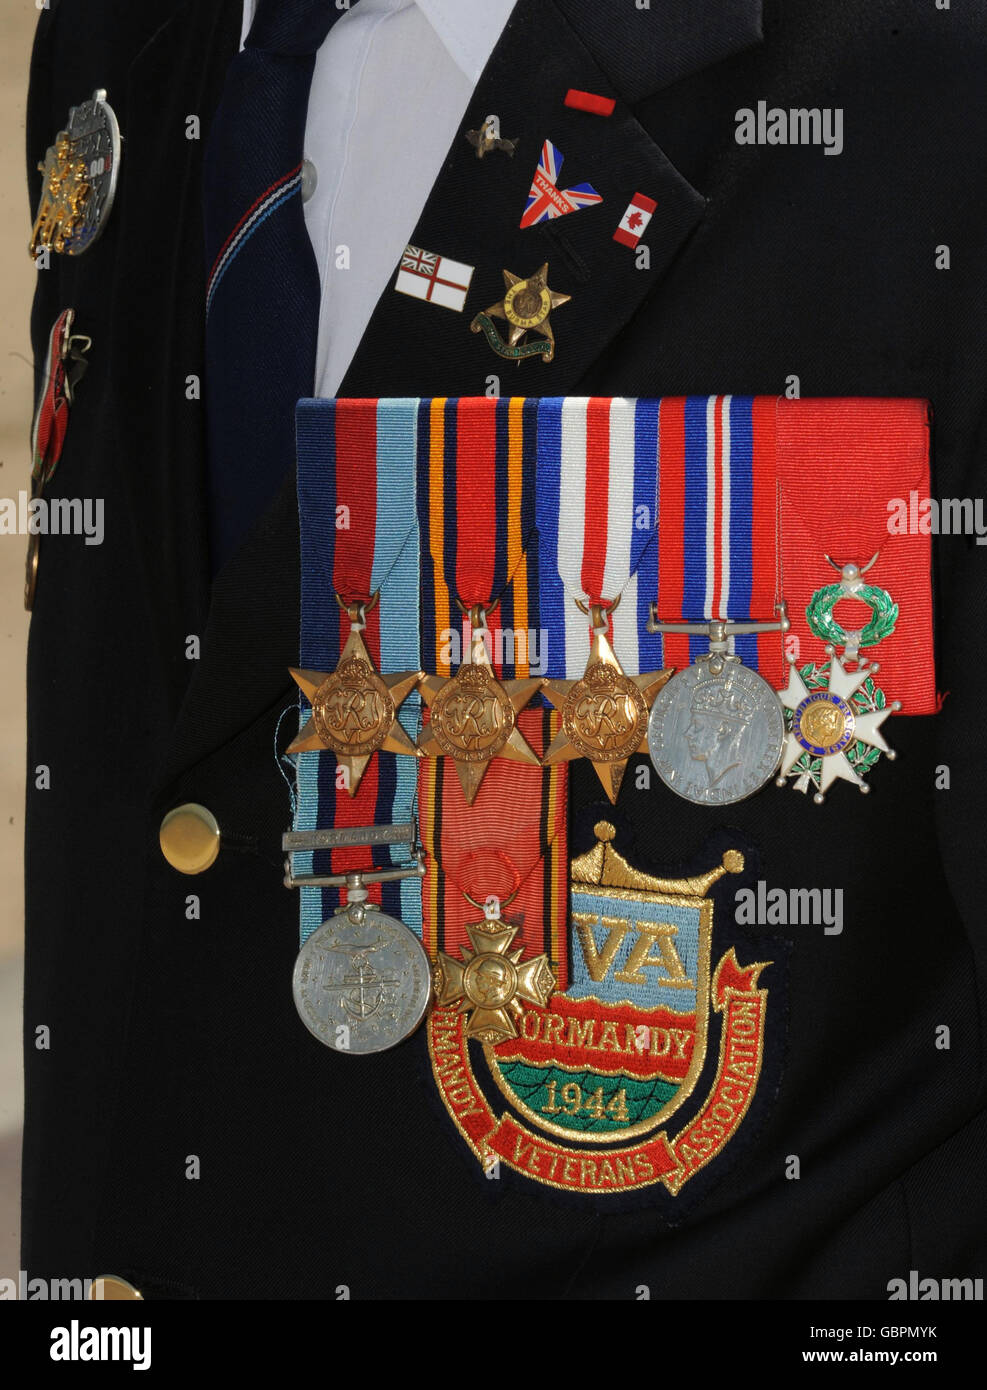 Nahaufnahme der Medaillen des Normandie-Veteranen Peter Thompson, der am 6. Juni seinen 84. Geburtstag feiert, während er an der Stelle steht, an der er 1944 am Sword Beach, Hermanville, am Vorabend des 65. Jahrestages der Landung am D-Day landete. Stockfoto